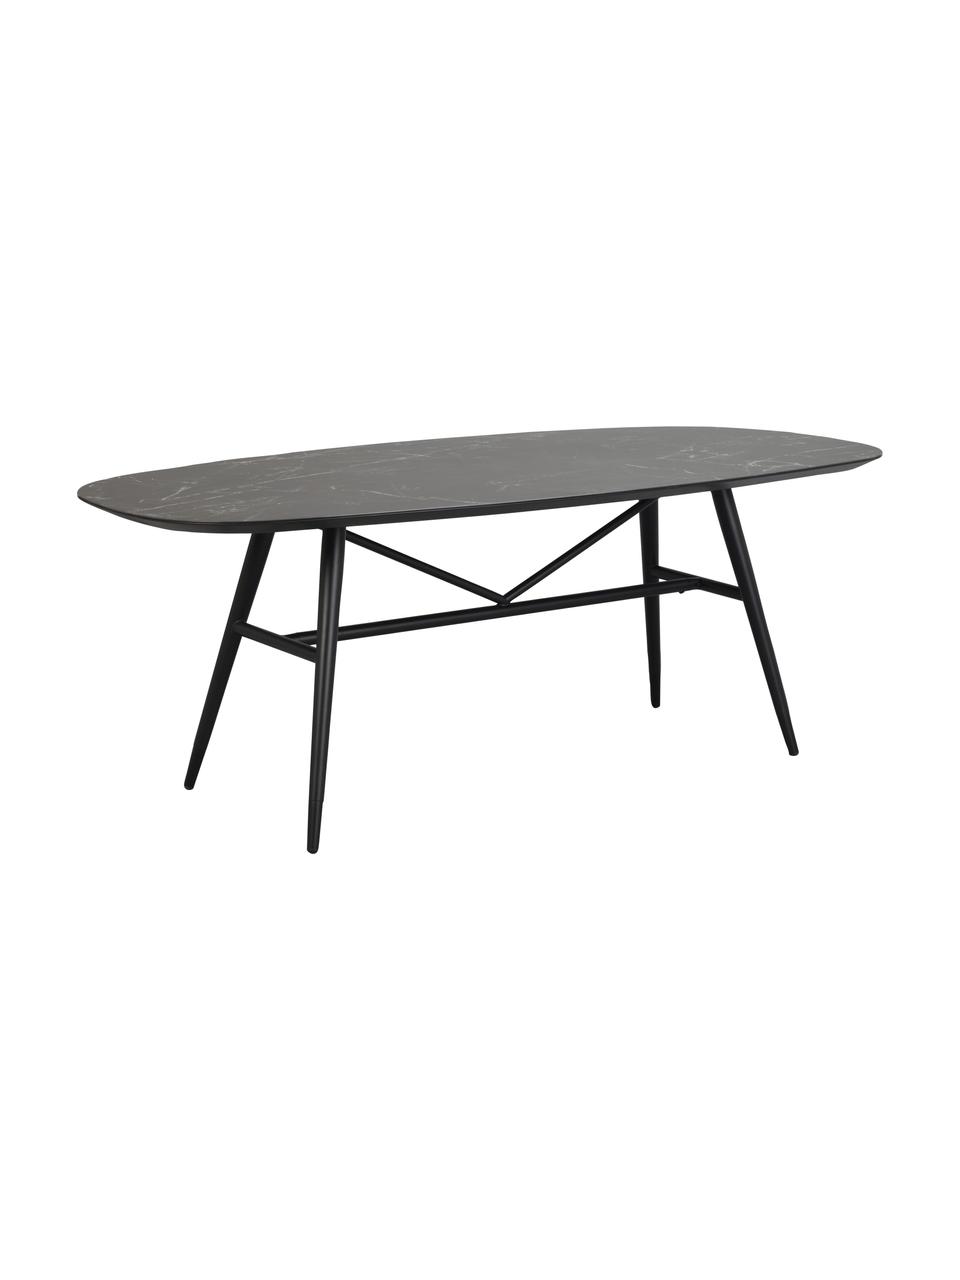 Jídelní stůl s deskou v mramorovém vzhledu Springdale, 200 x 98 cm, Černá, Š 200 cm, H 98 cm